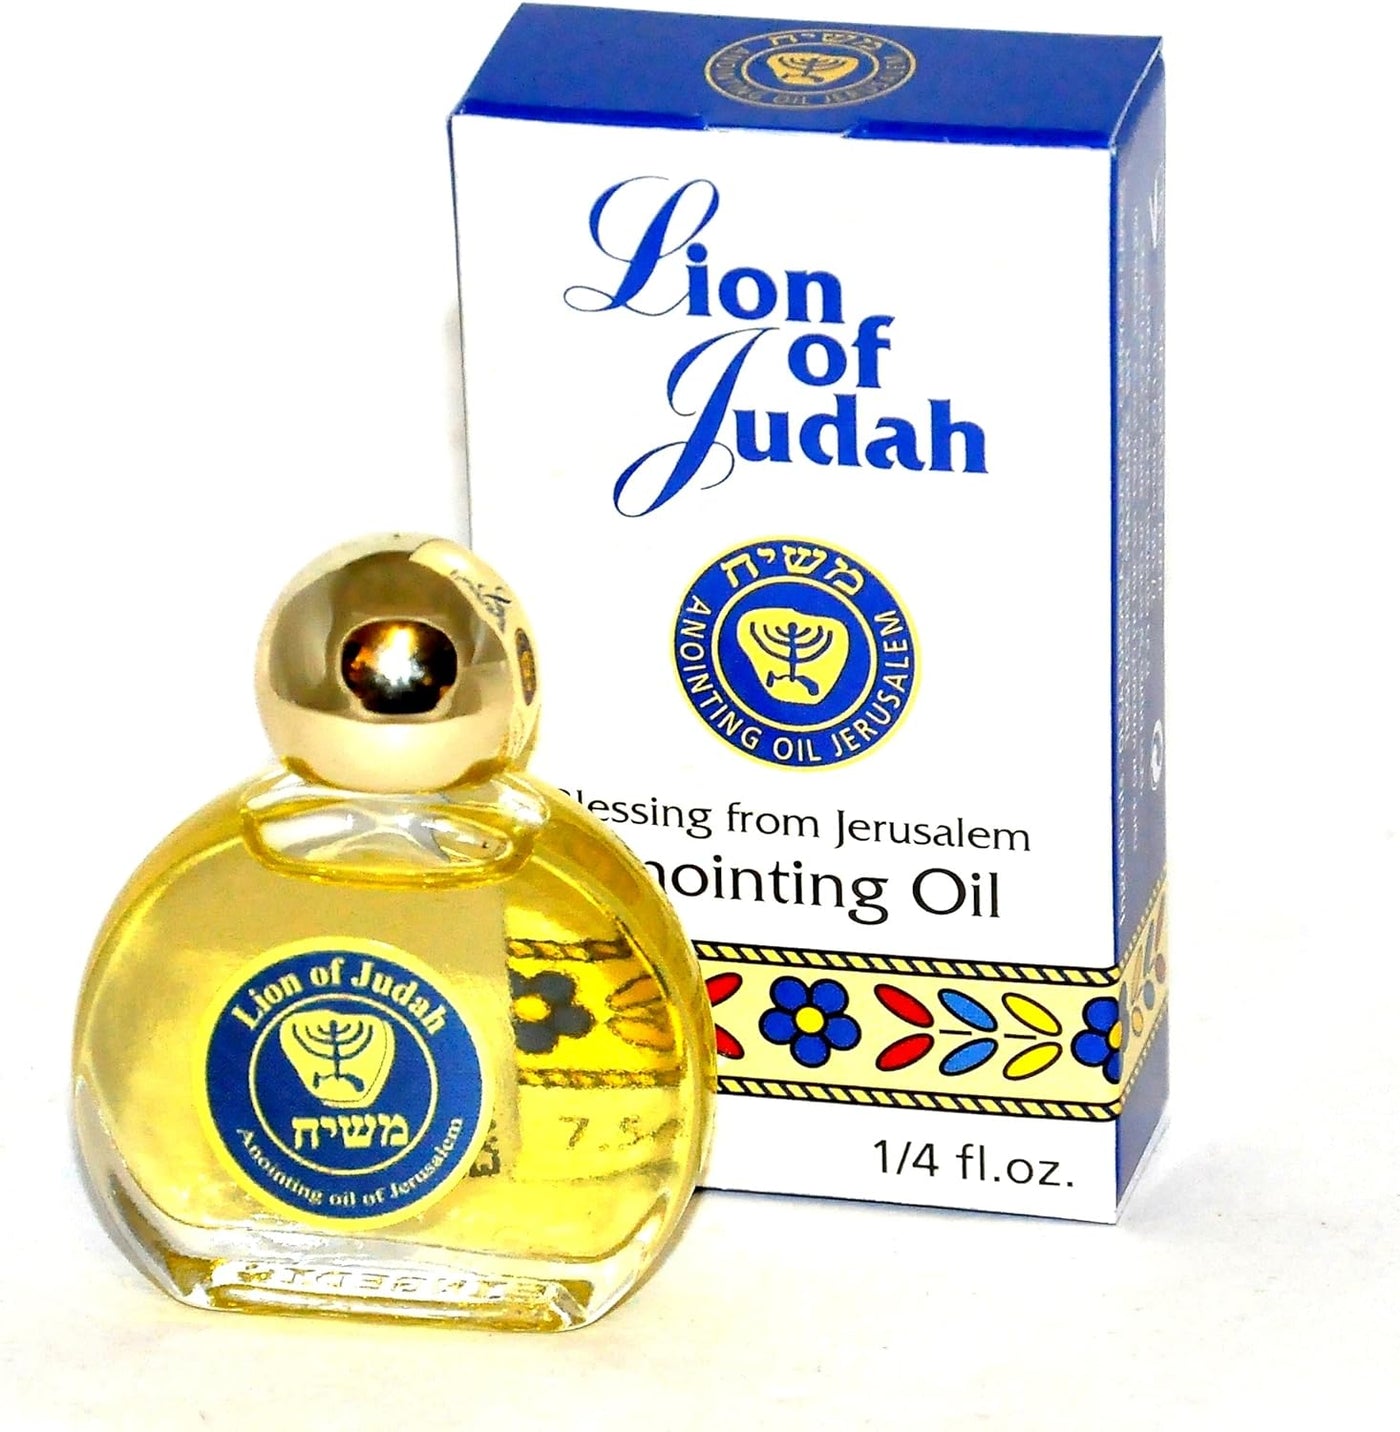 10 x Lion of Judah Anointing Oil 7.5 ml. - 0.25 oz EG